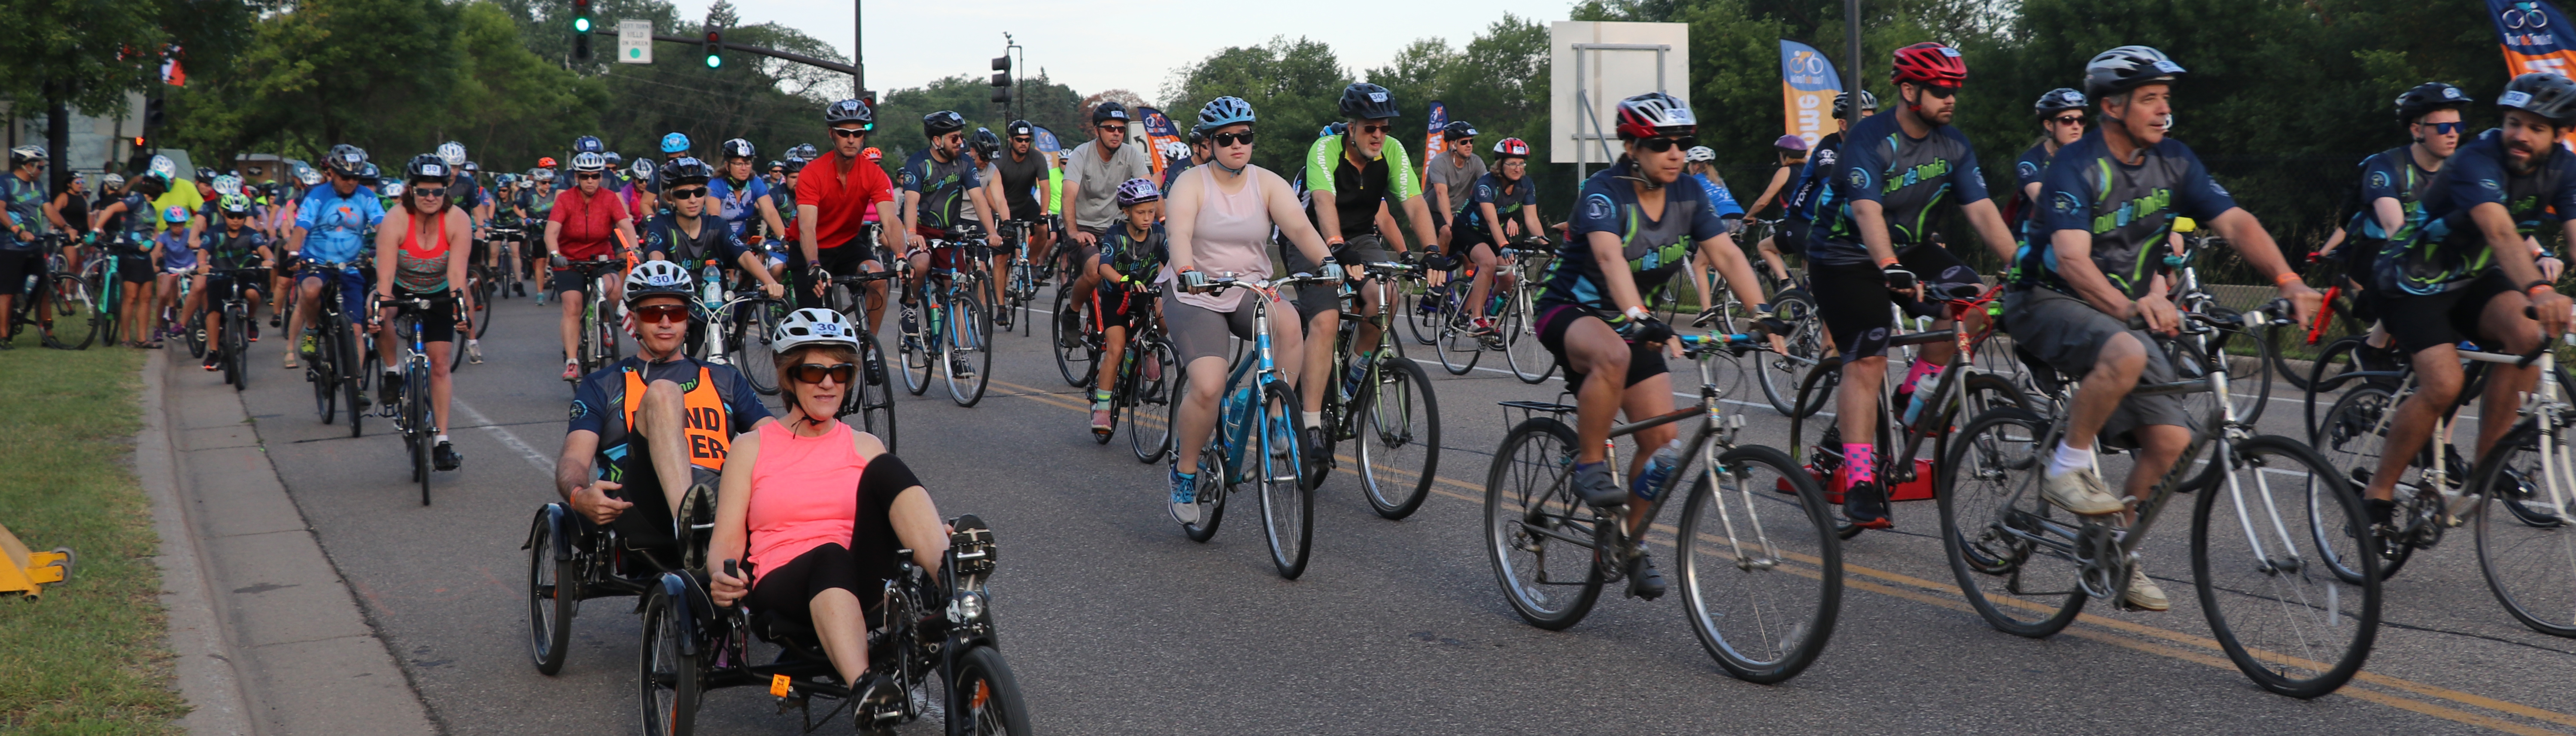 Участники "Тур де Тонка" 2016 года позируют со своими велосипедами на старте